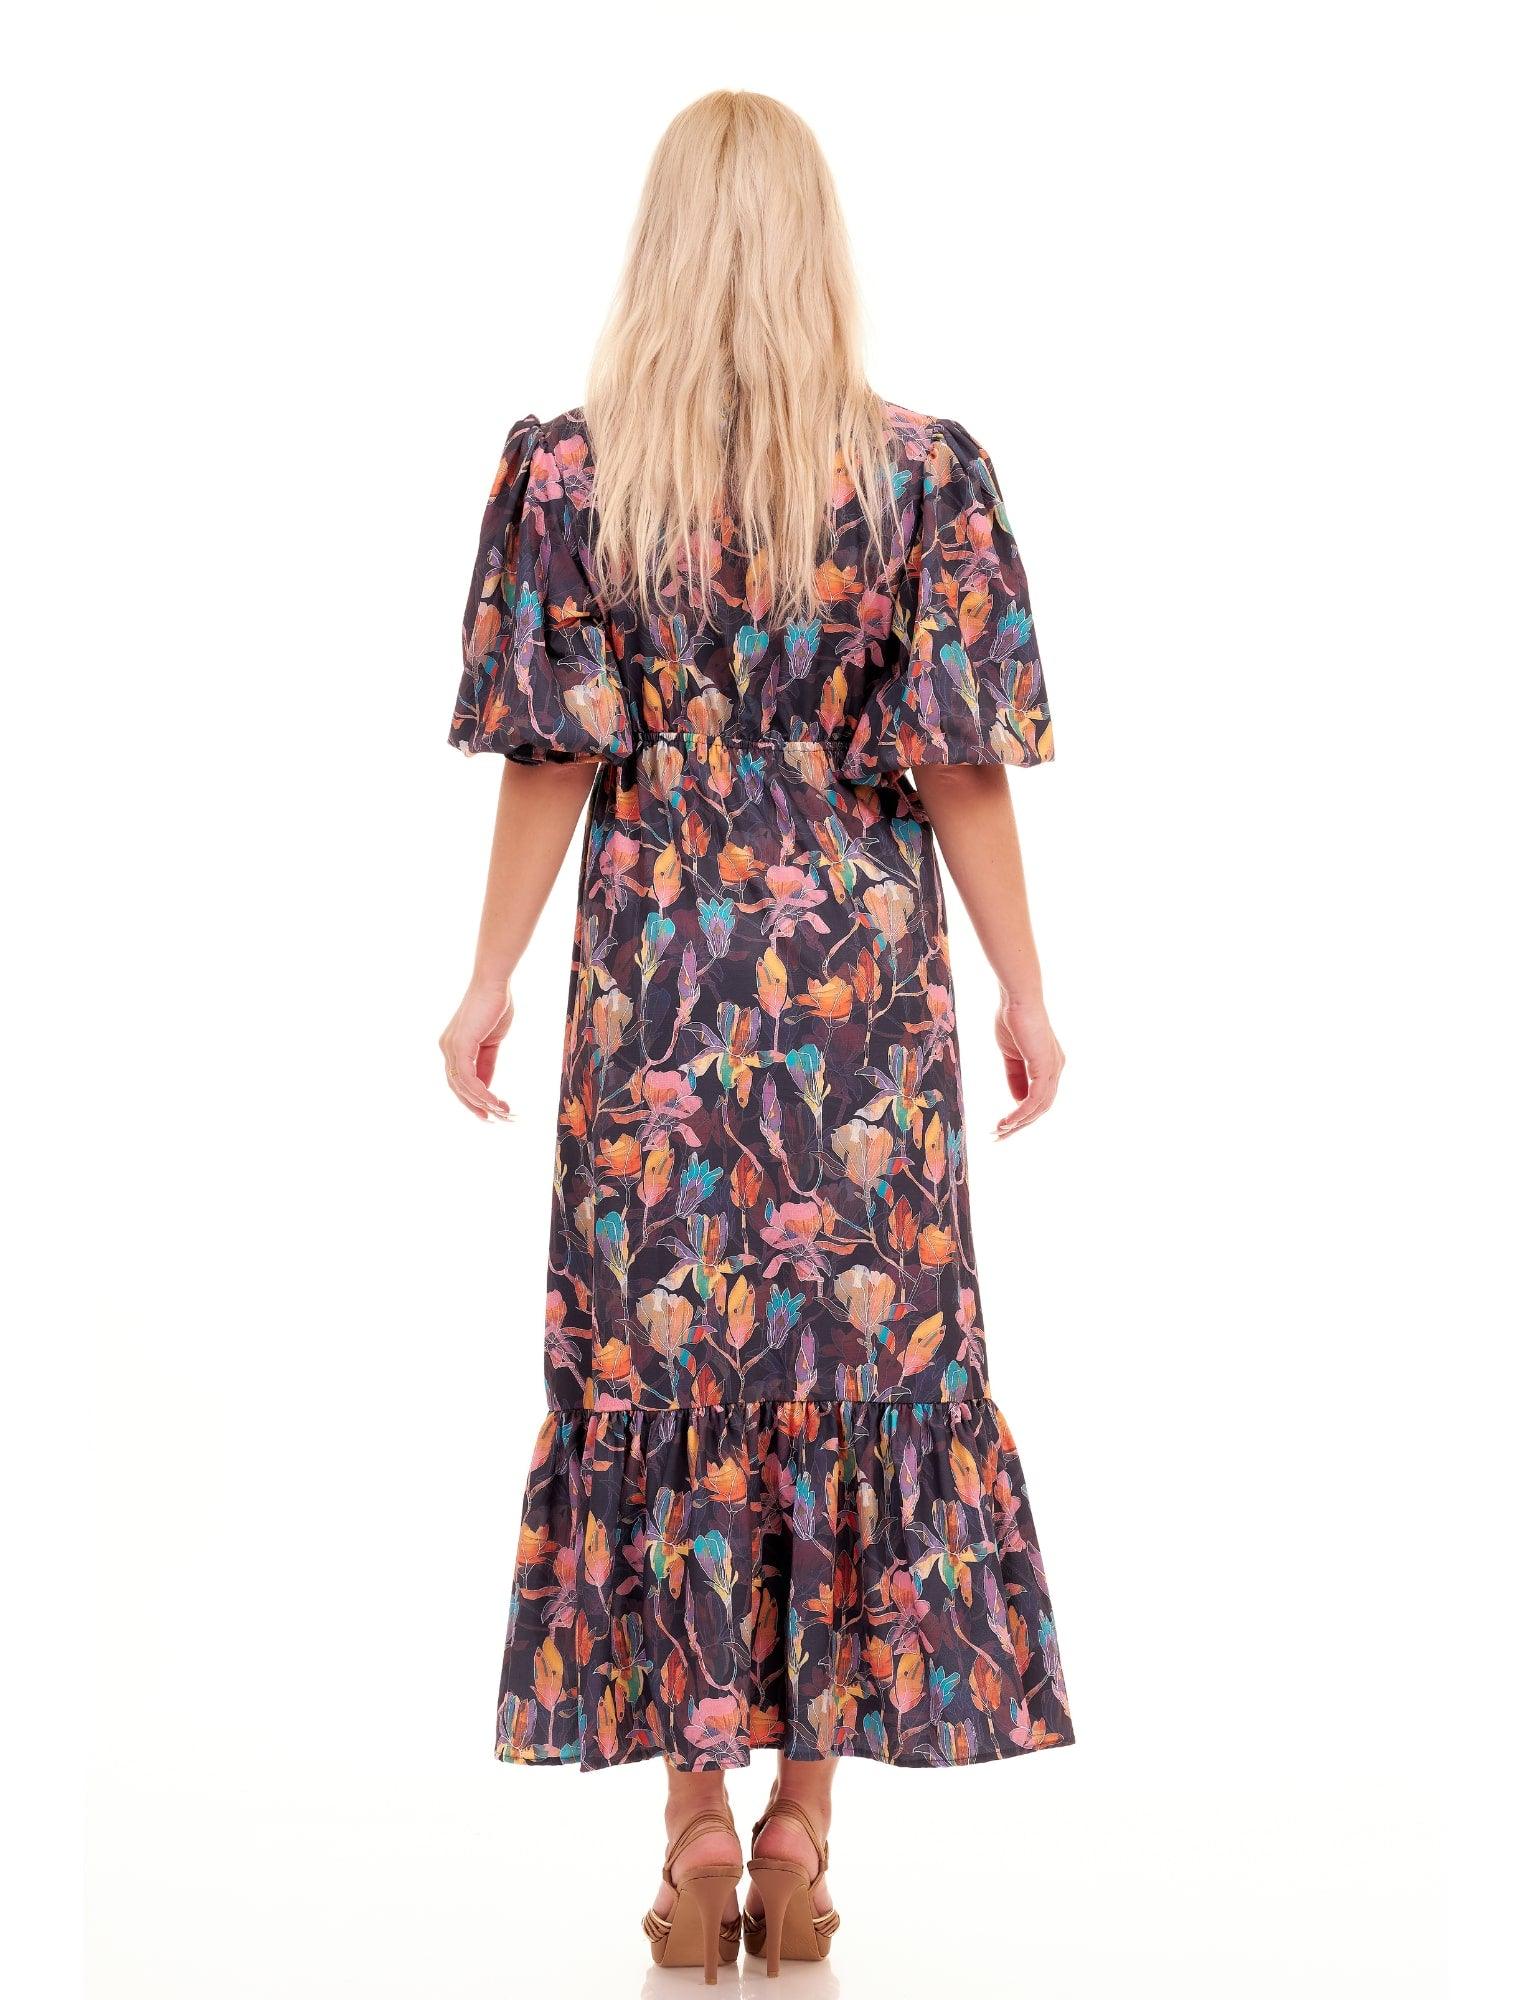 ARABELLA DRESS - FLORAL - Woman Dress - Acqua Bonita